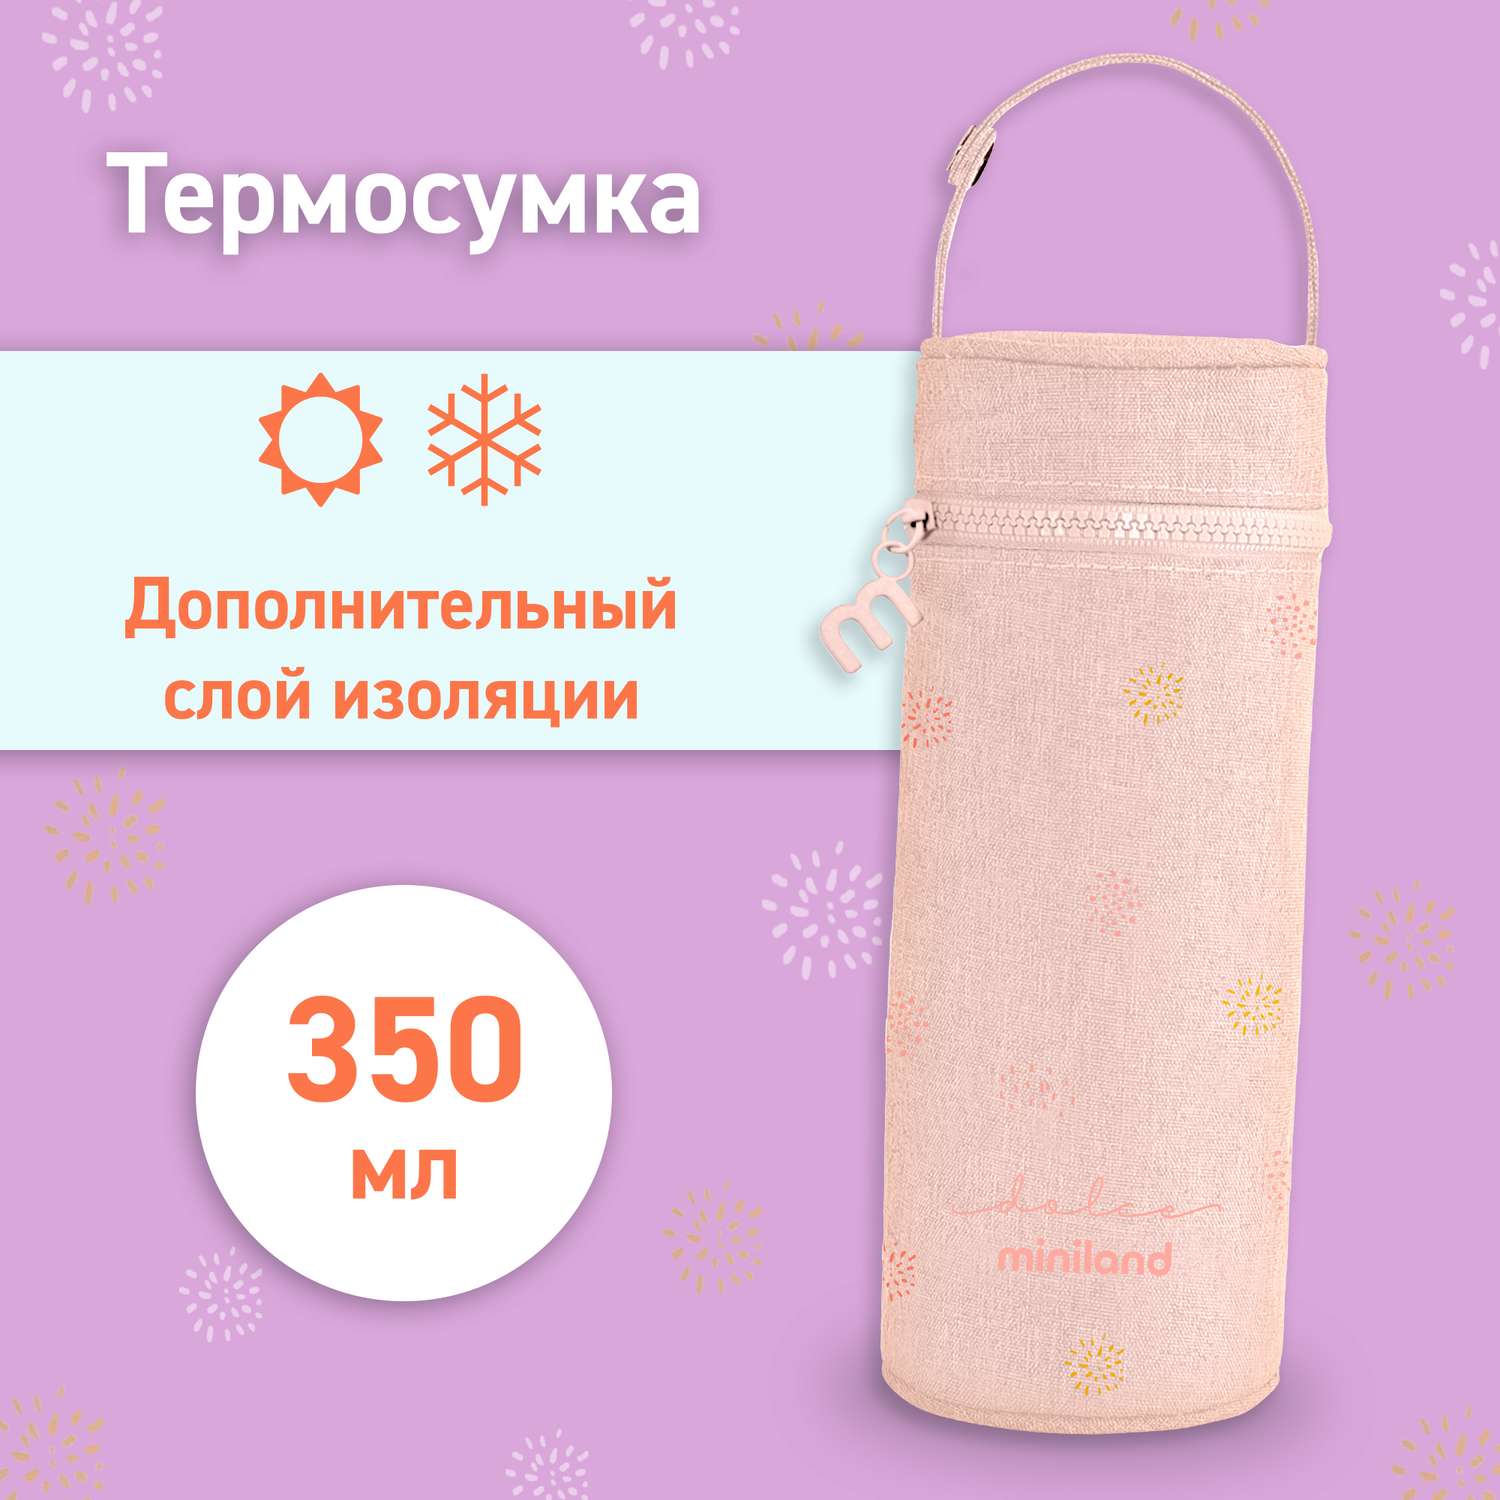 Термосумка Miniland для бутылочек Thermybag Dolce 350мл розовый - фото 1